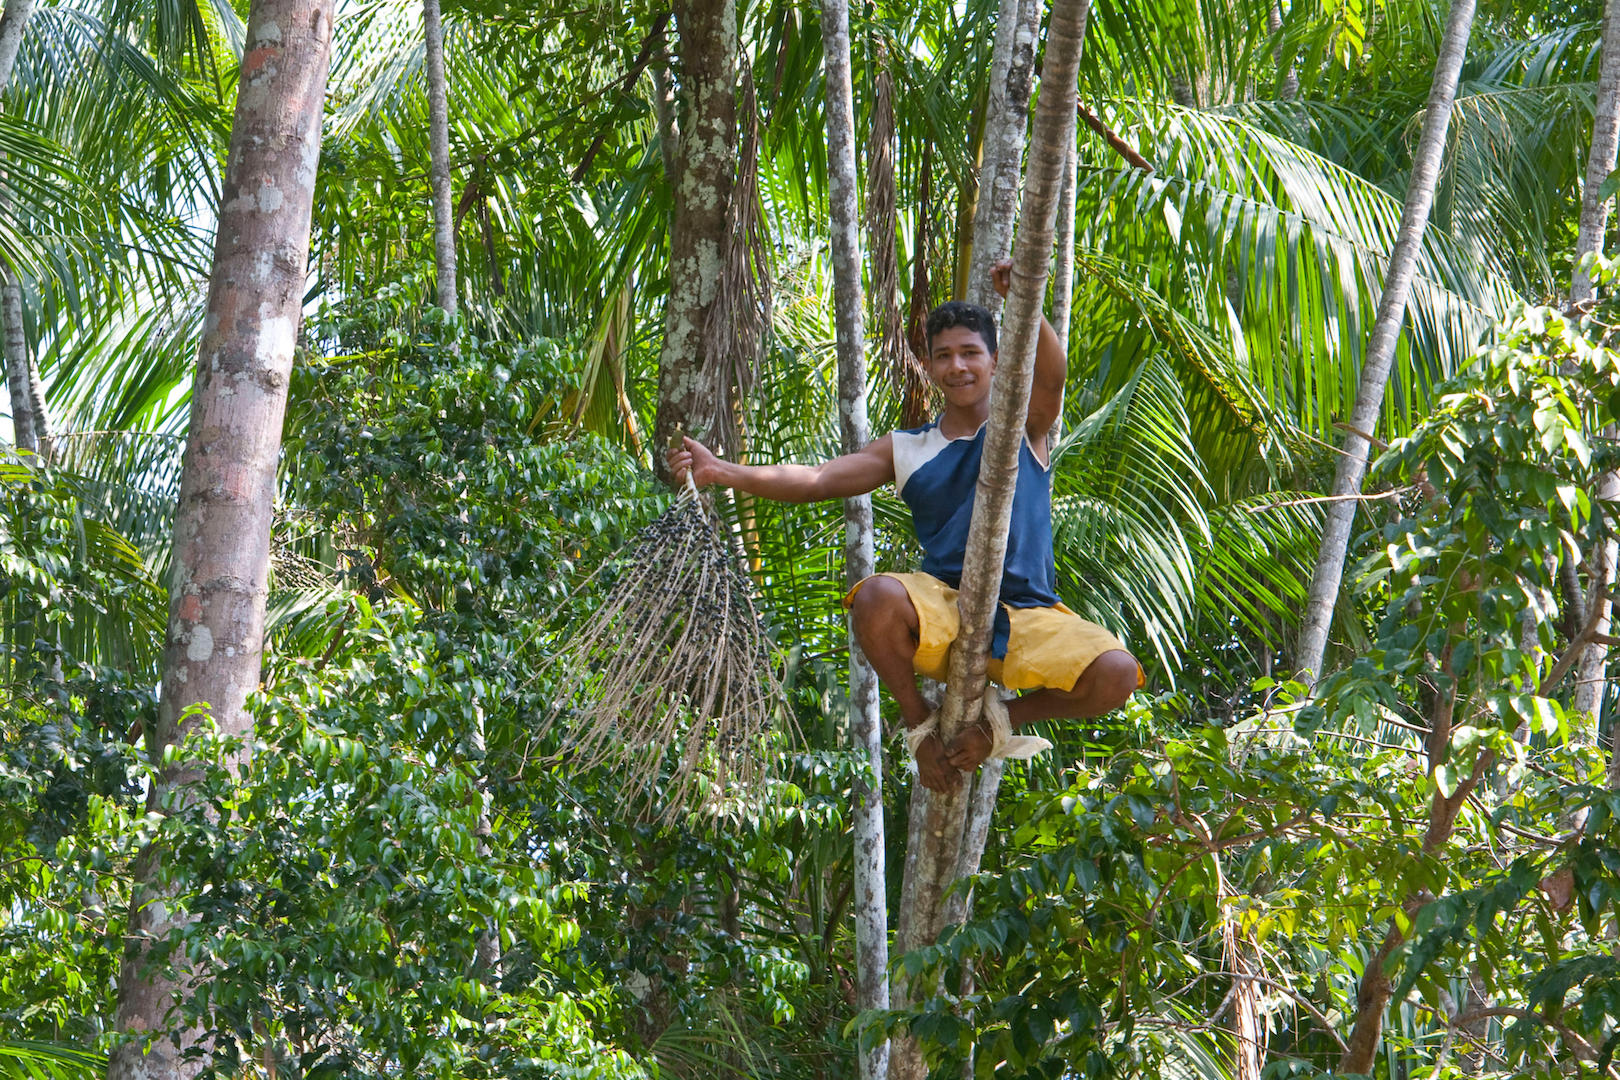 A peconheiro climbs an açaí palm in Belém, northern Brazil